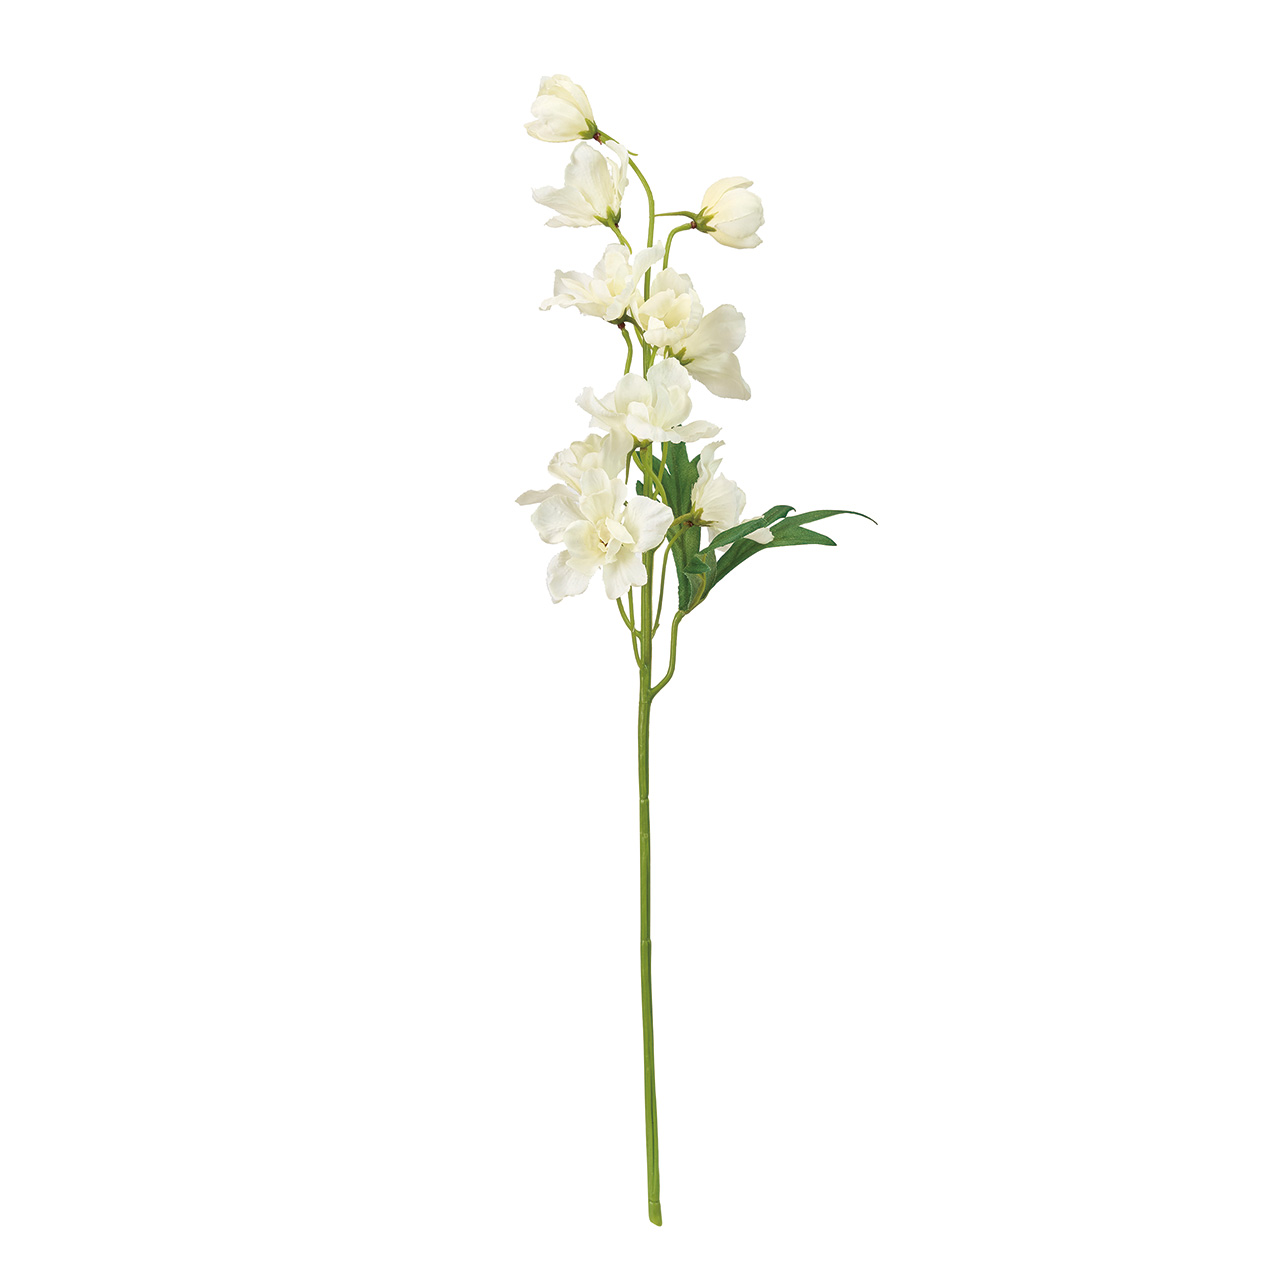 MAGIQ　サザンデルフィニウム　クリームホワイト　アーティフィシャルフラワー　造花　デルフィニウム　FM002074-001